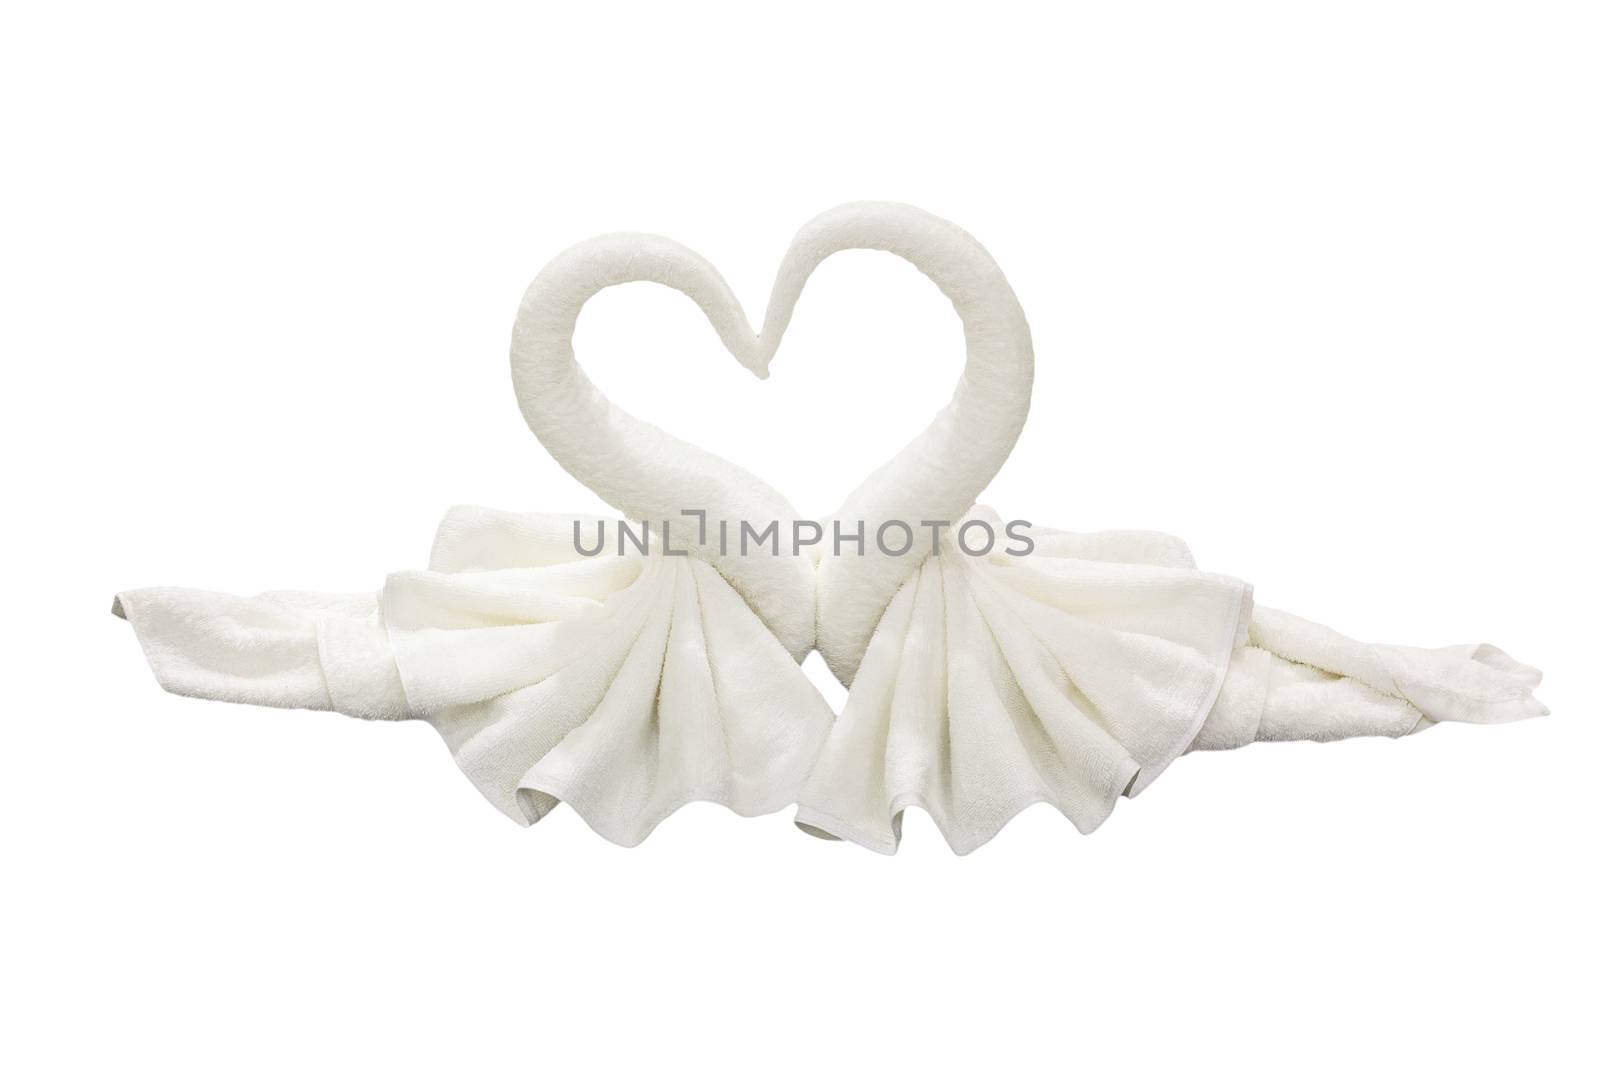 towel folded in swan shape on white background by FrameAngel